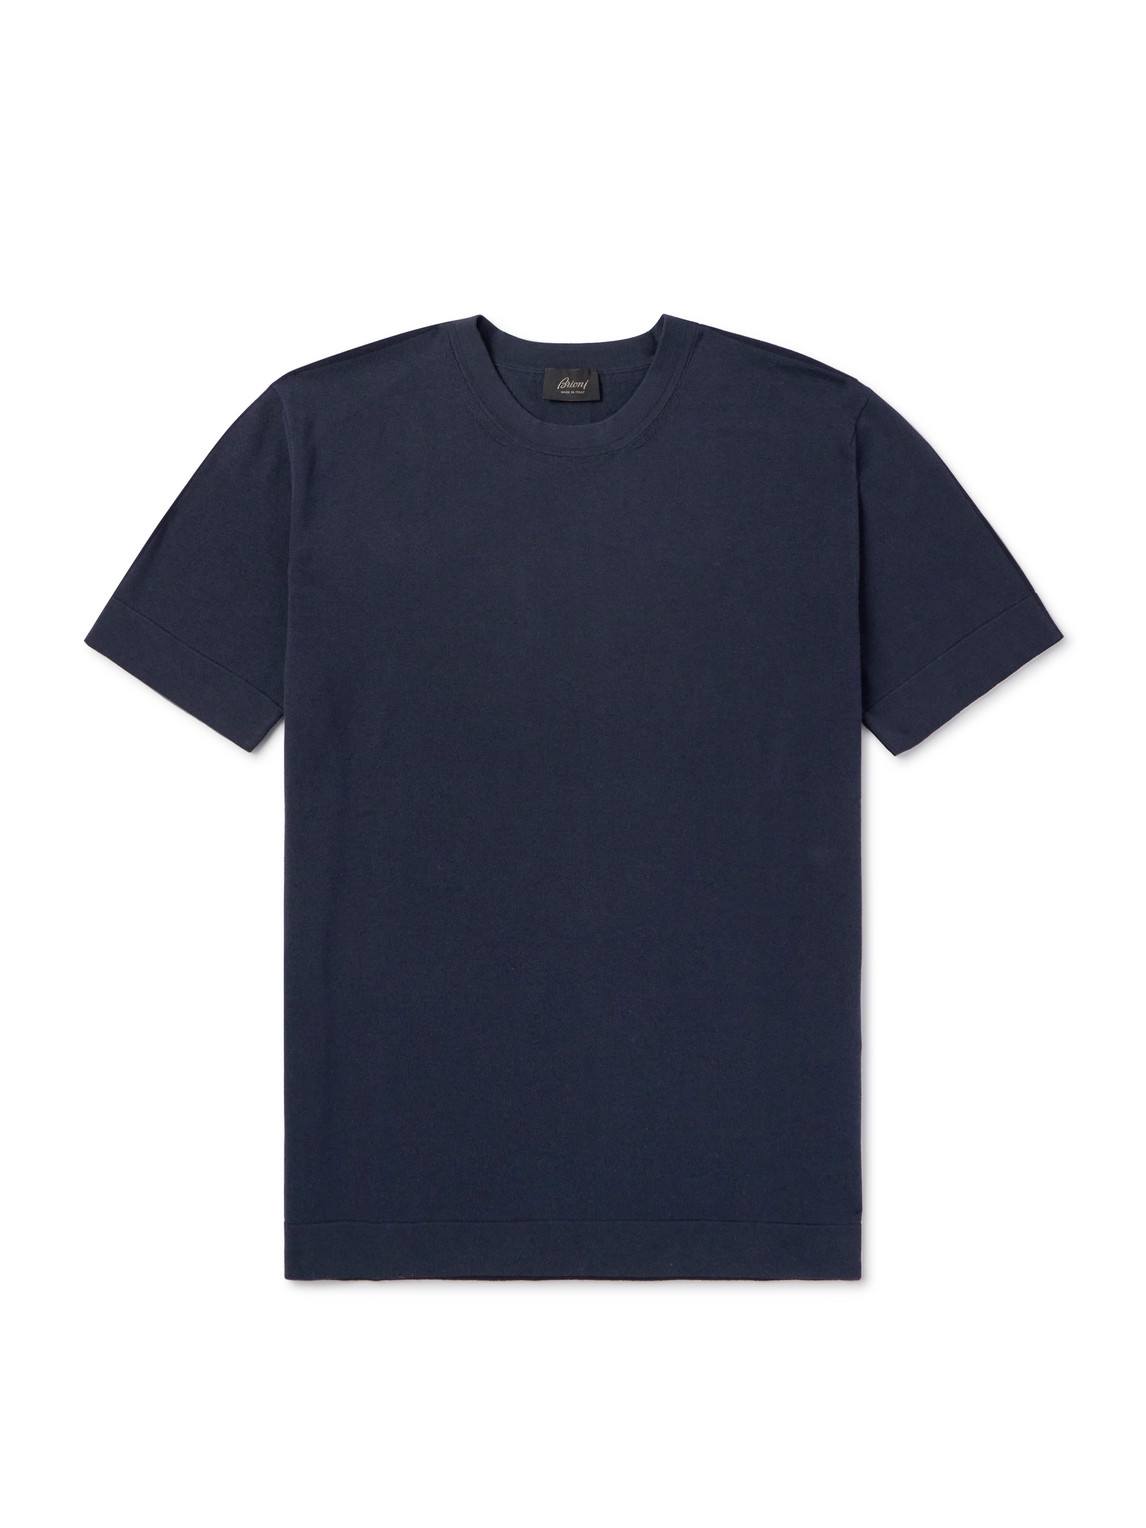 Cotton and Silk-Blend T-Shirt